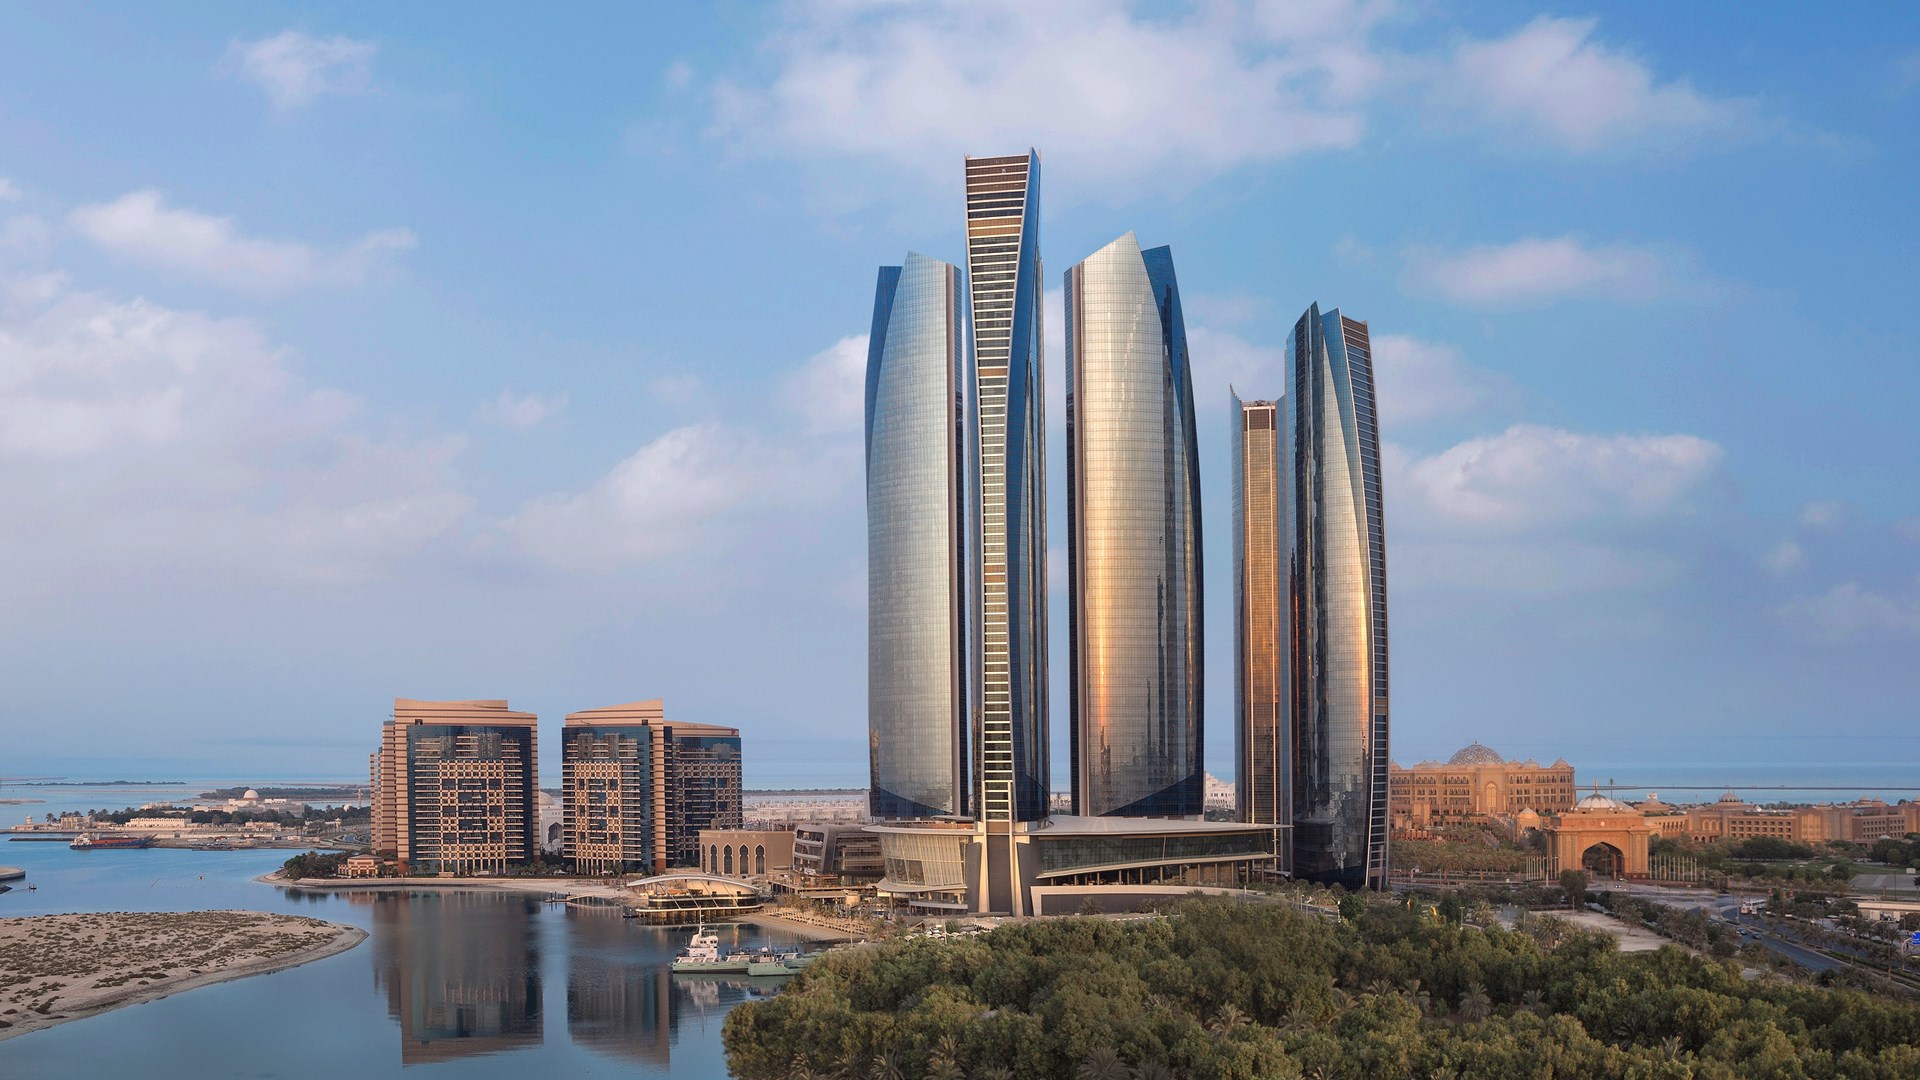 Aangeraden door de Guide Michelin, himself Conrad Abu Dhabi Etihad Towers